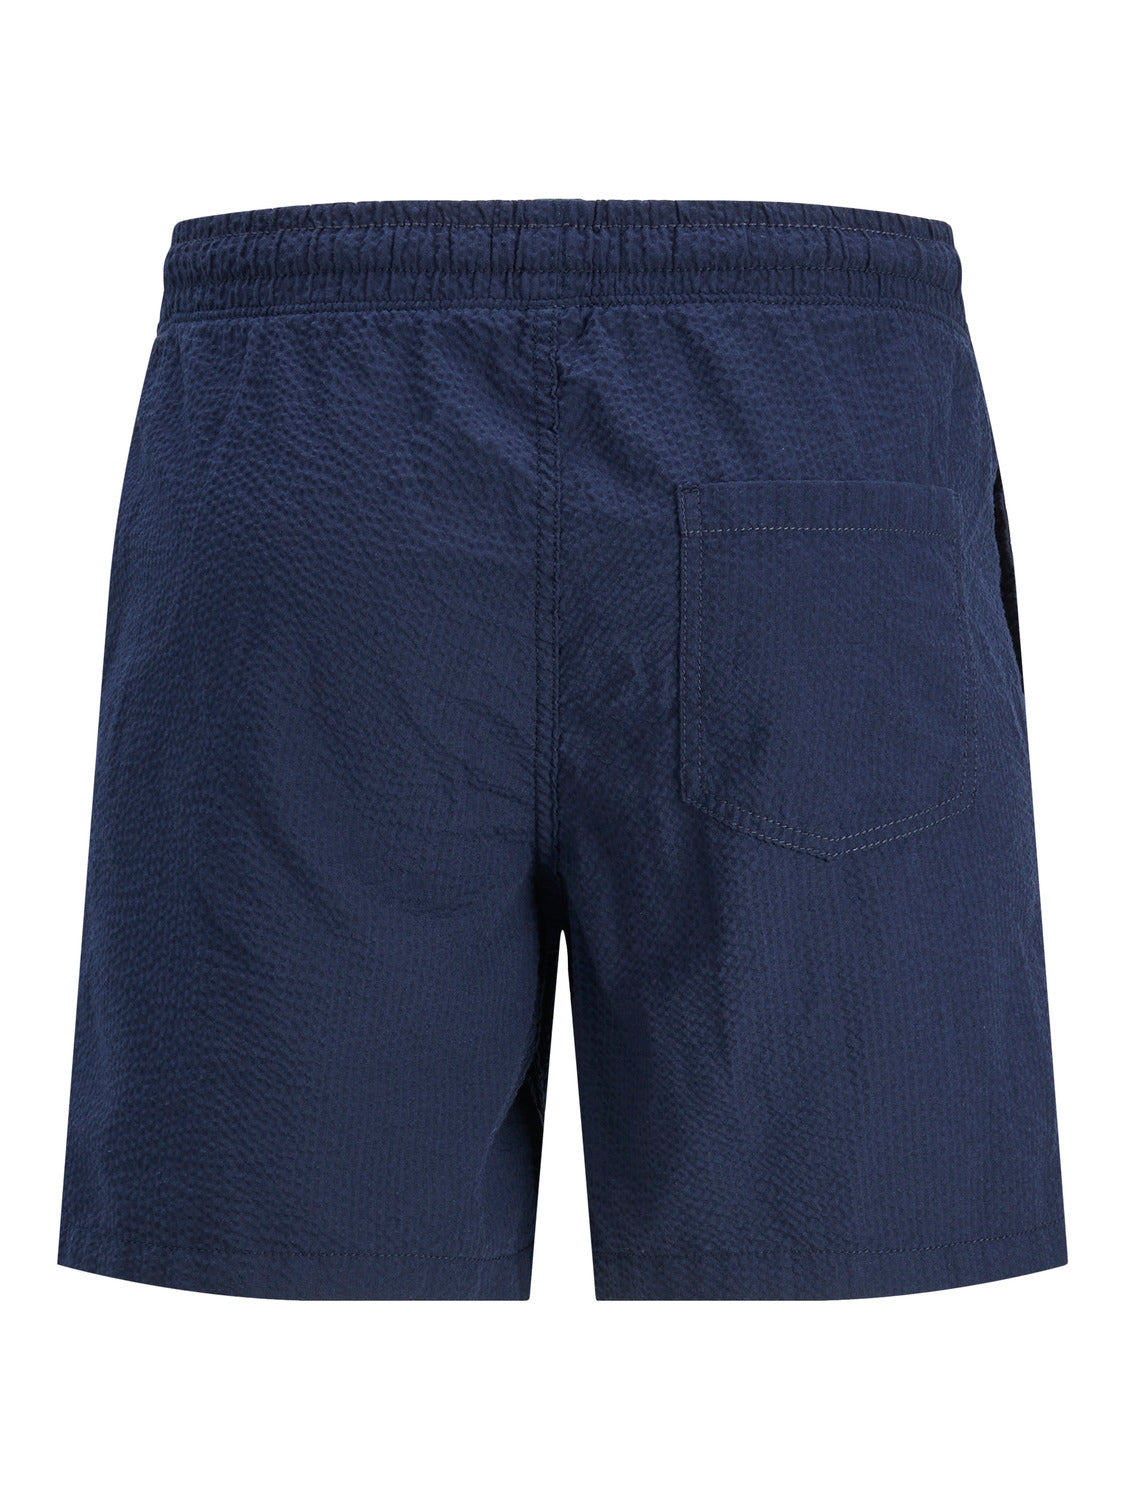 JPSTJEFF Shorts - Navy Blazer